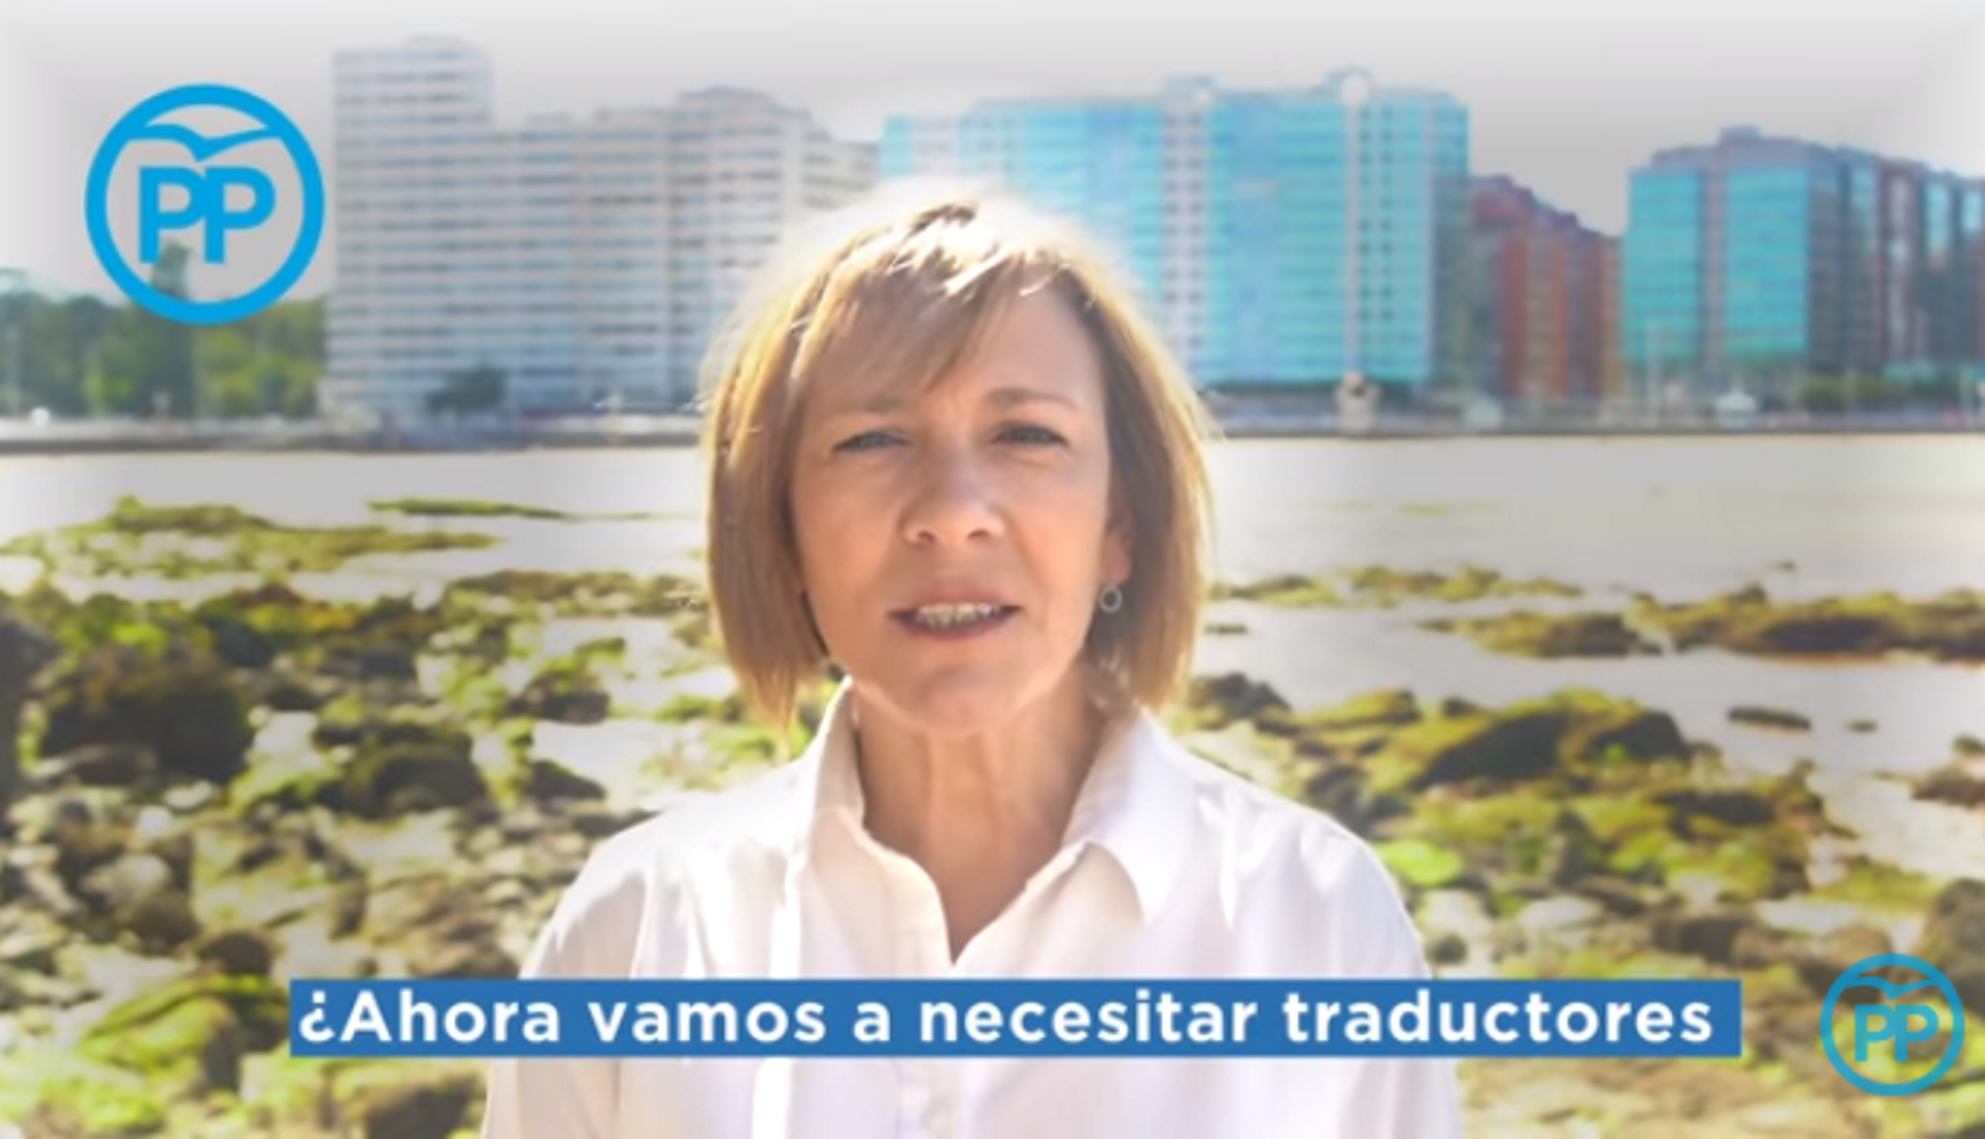 El ridícul vídeo del PP contra l'oficialitat de l'asturià